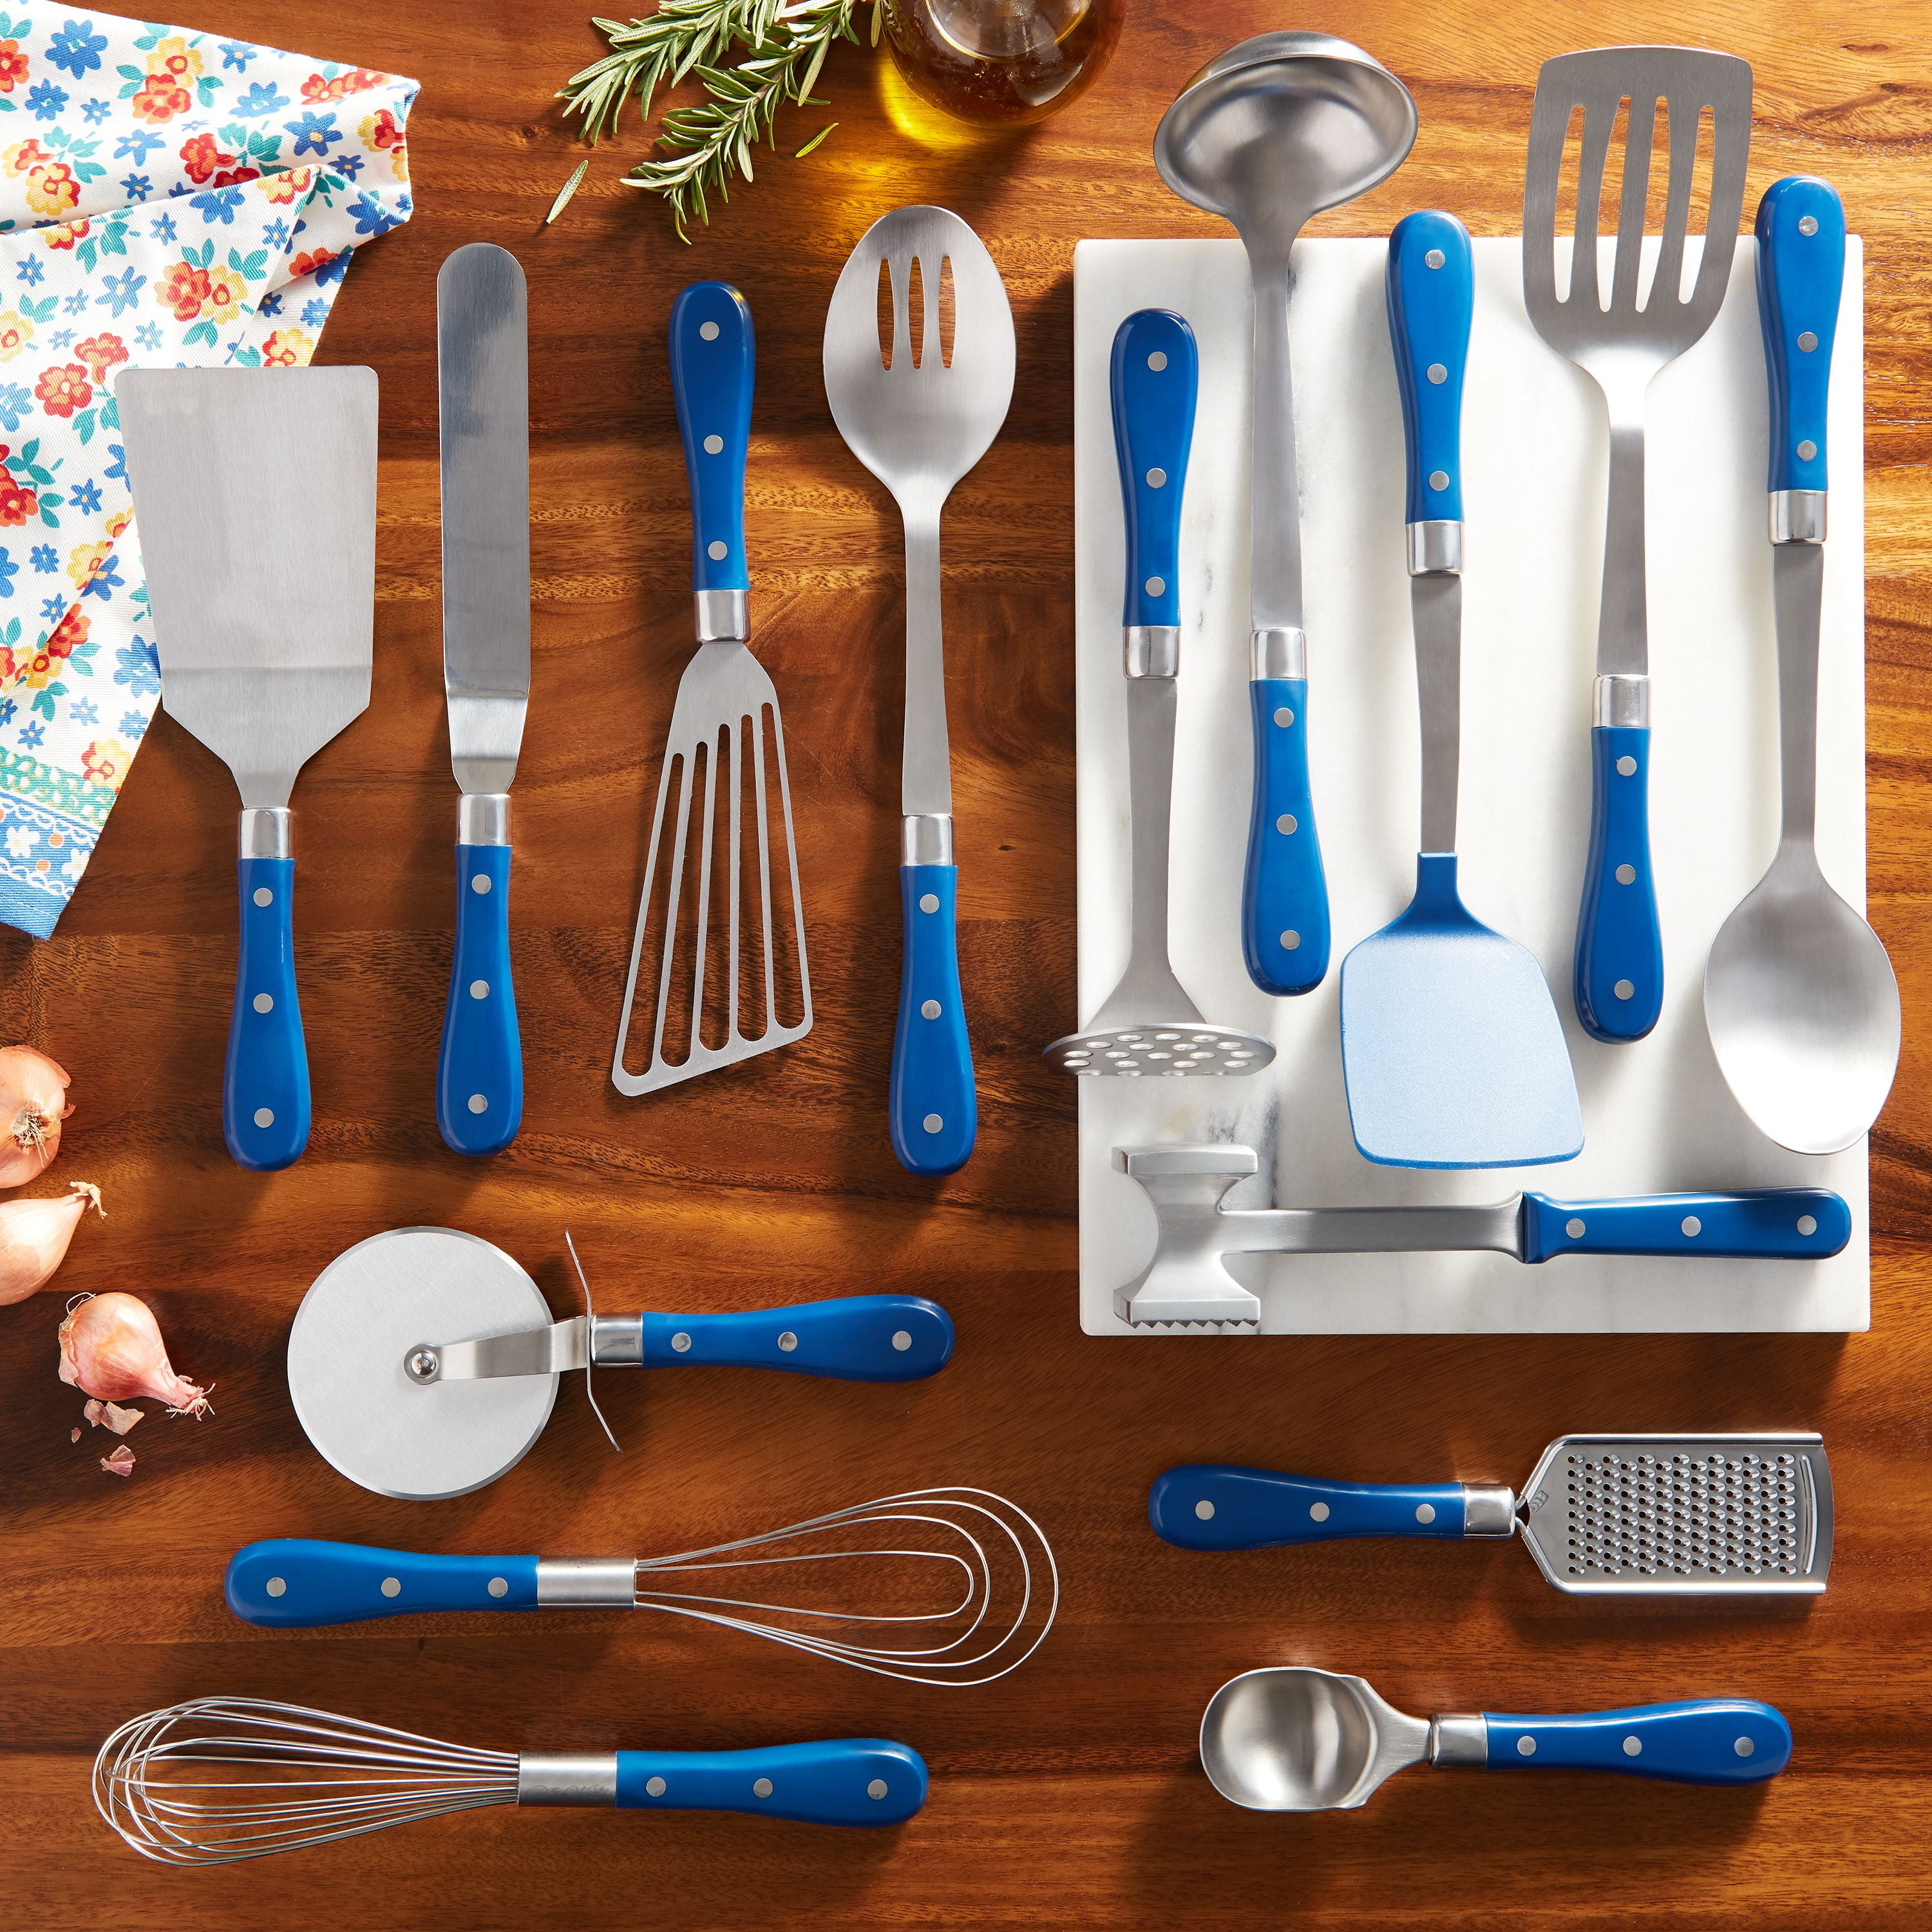 the blue utensil set